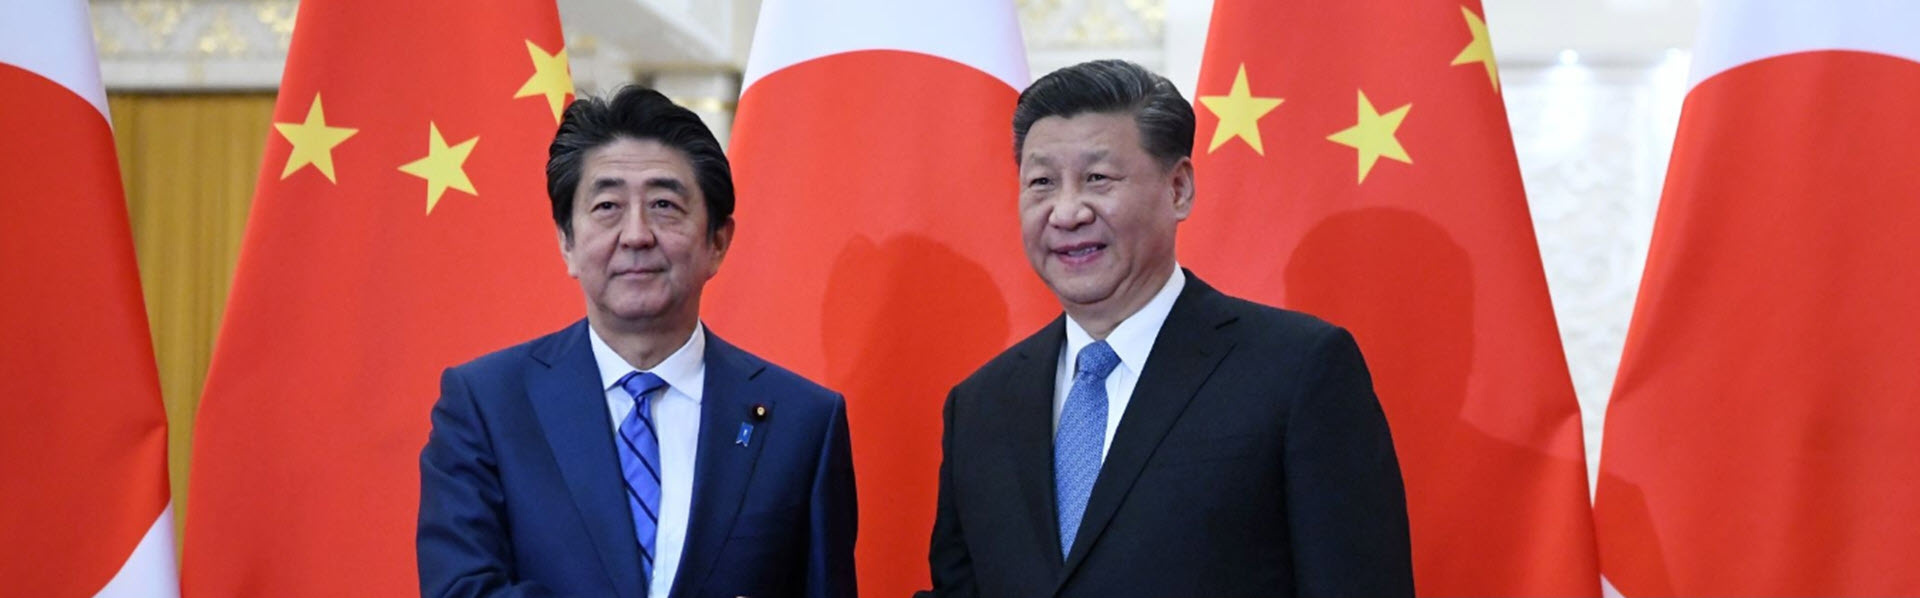 China-Japan diplomacy